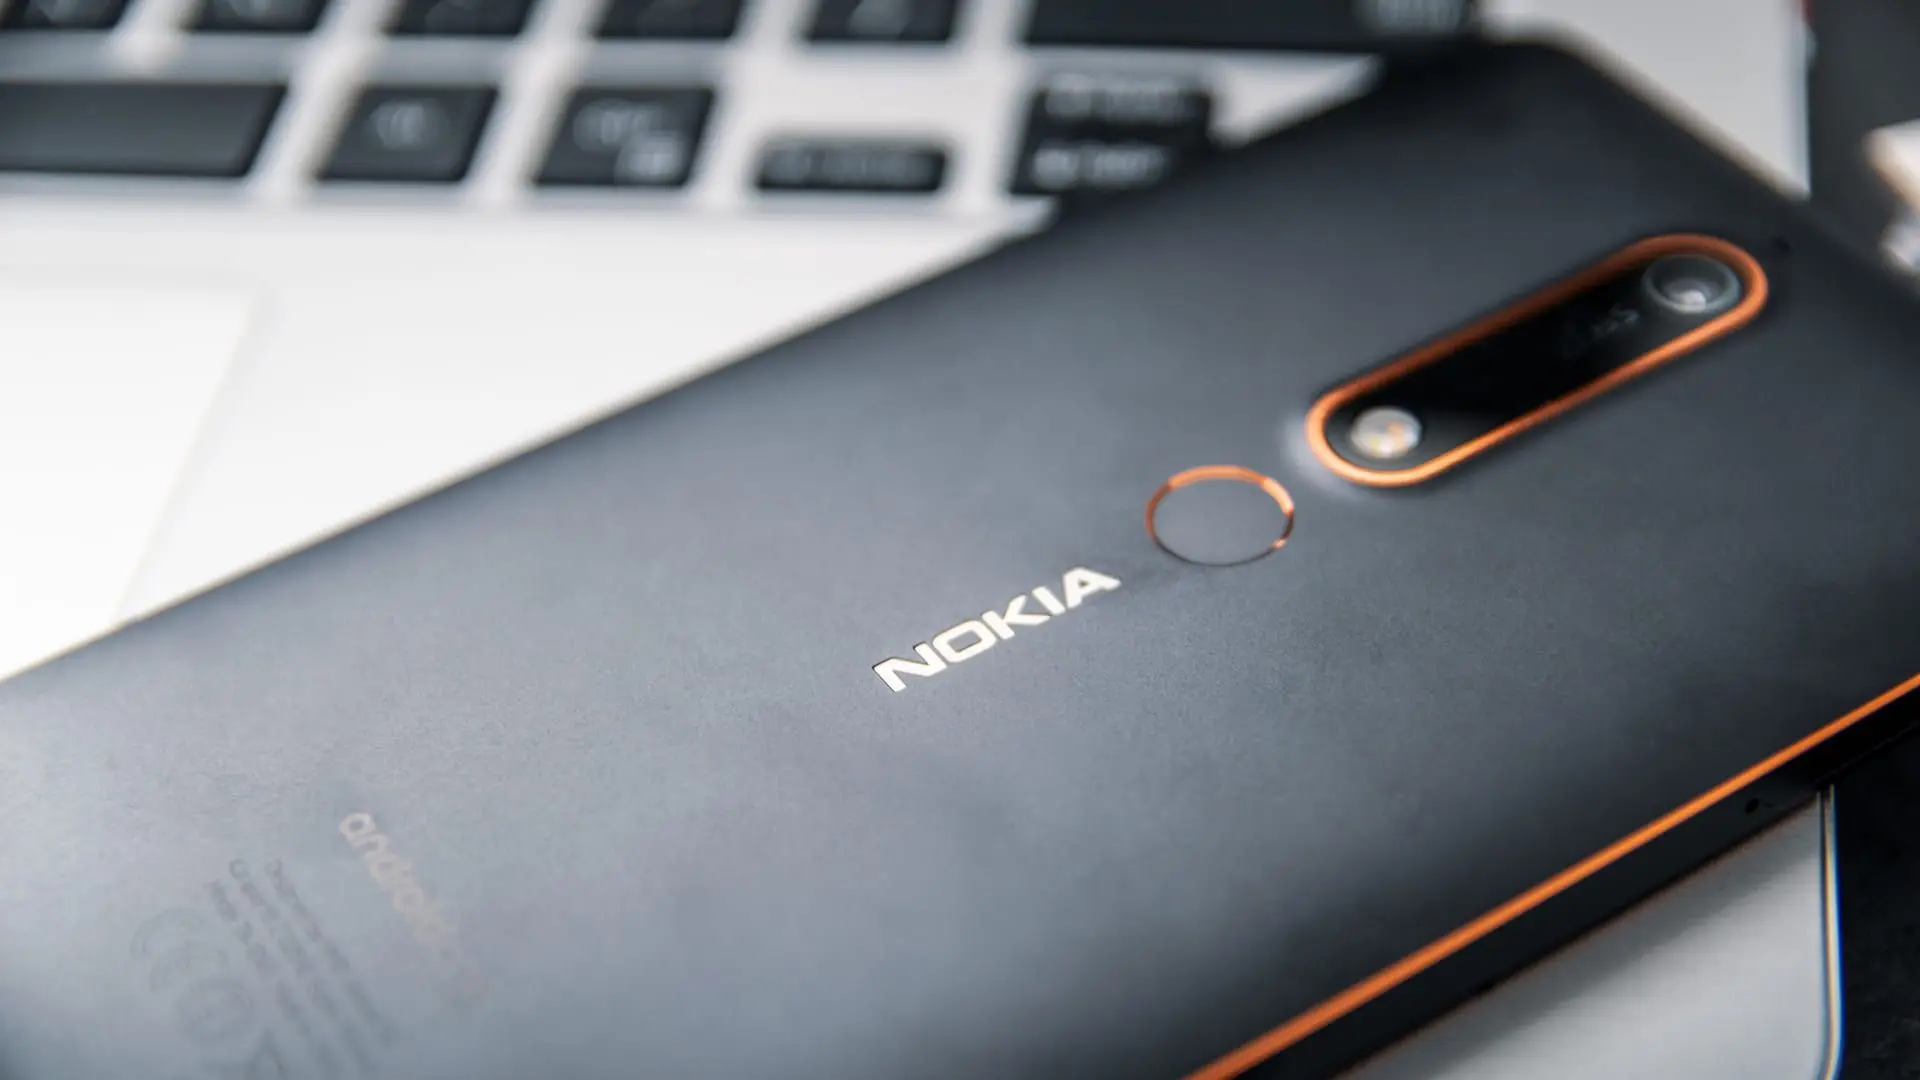 Modelo de celular da marca Nokia na cor preta apoiado em um teclado de notebook